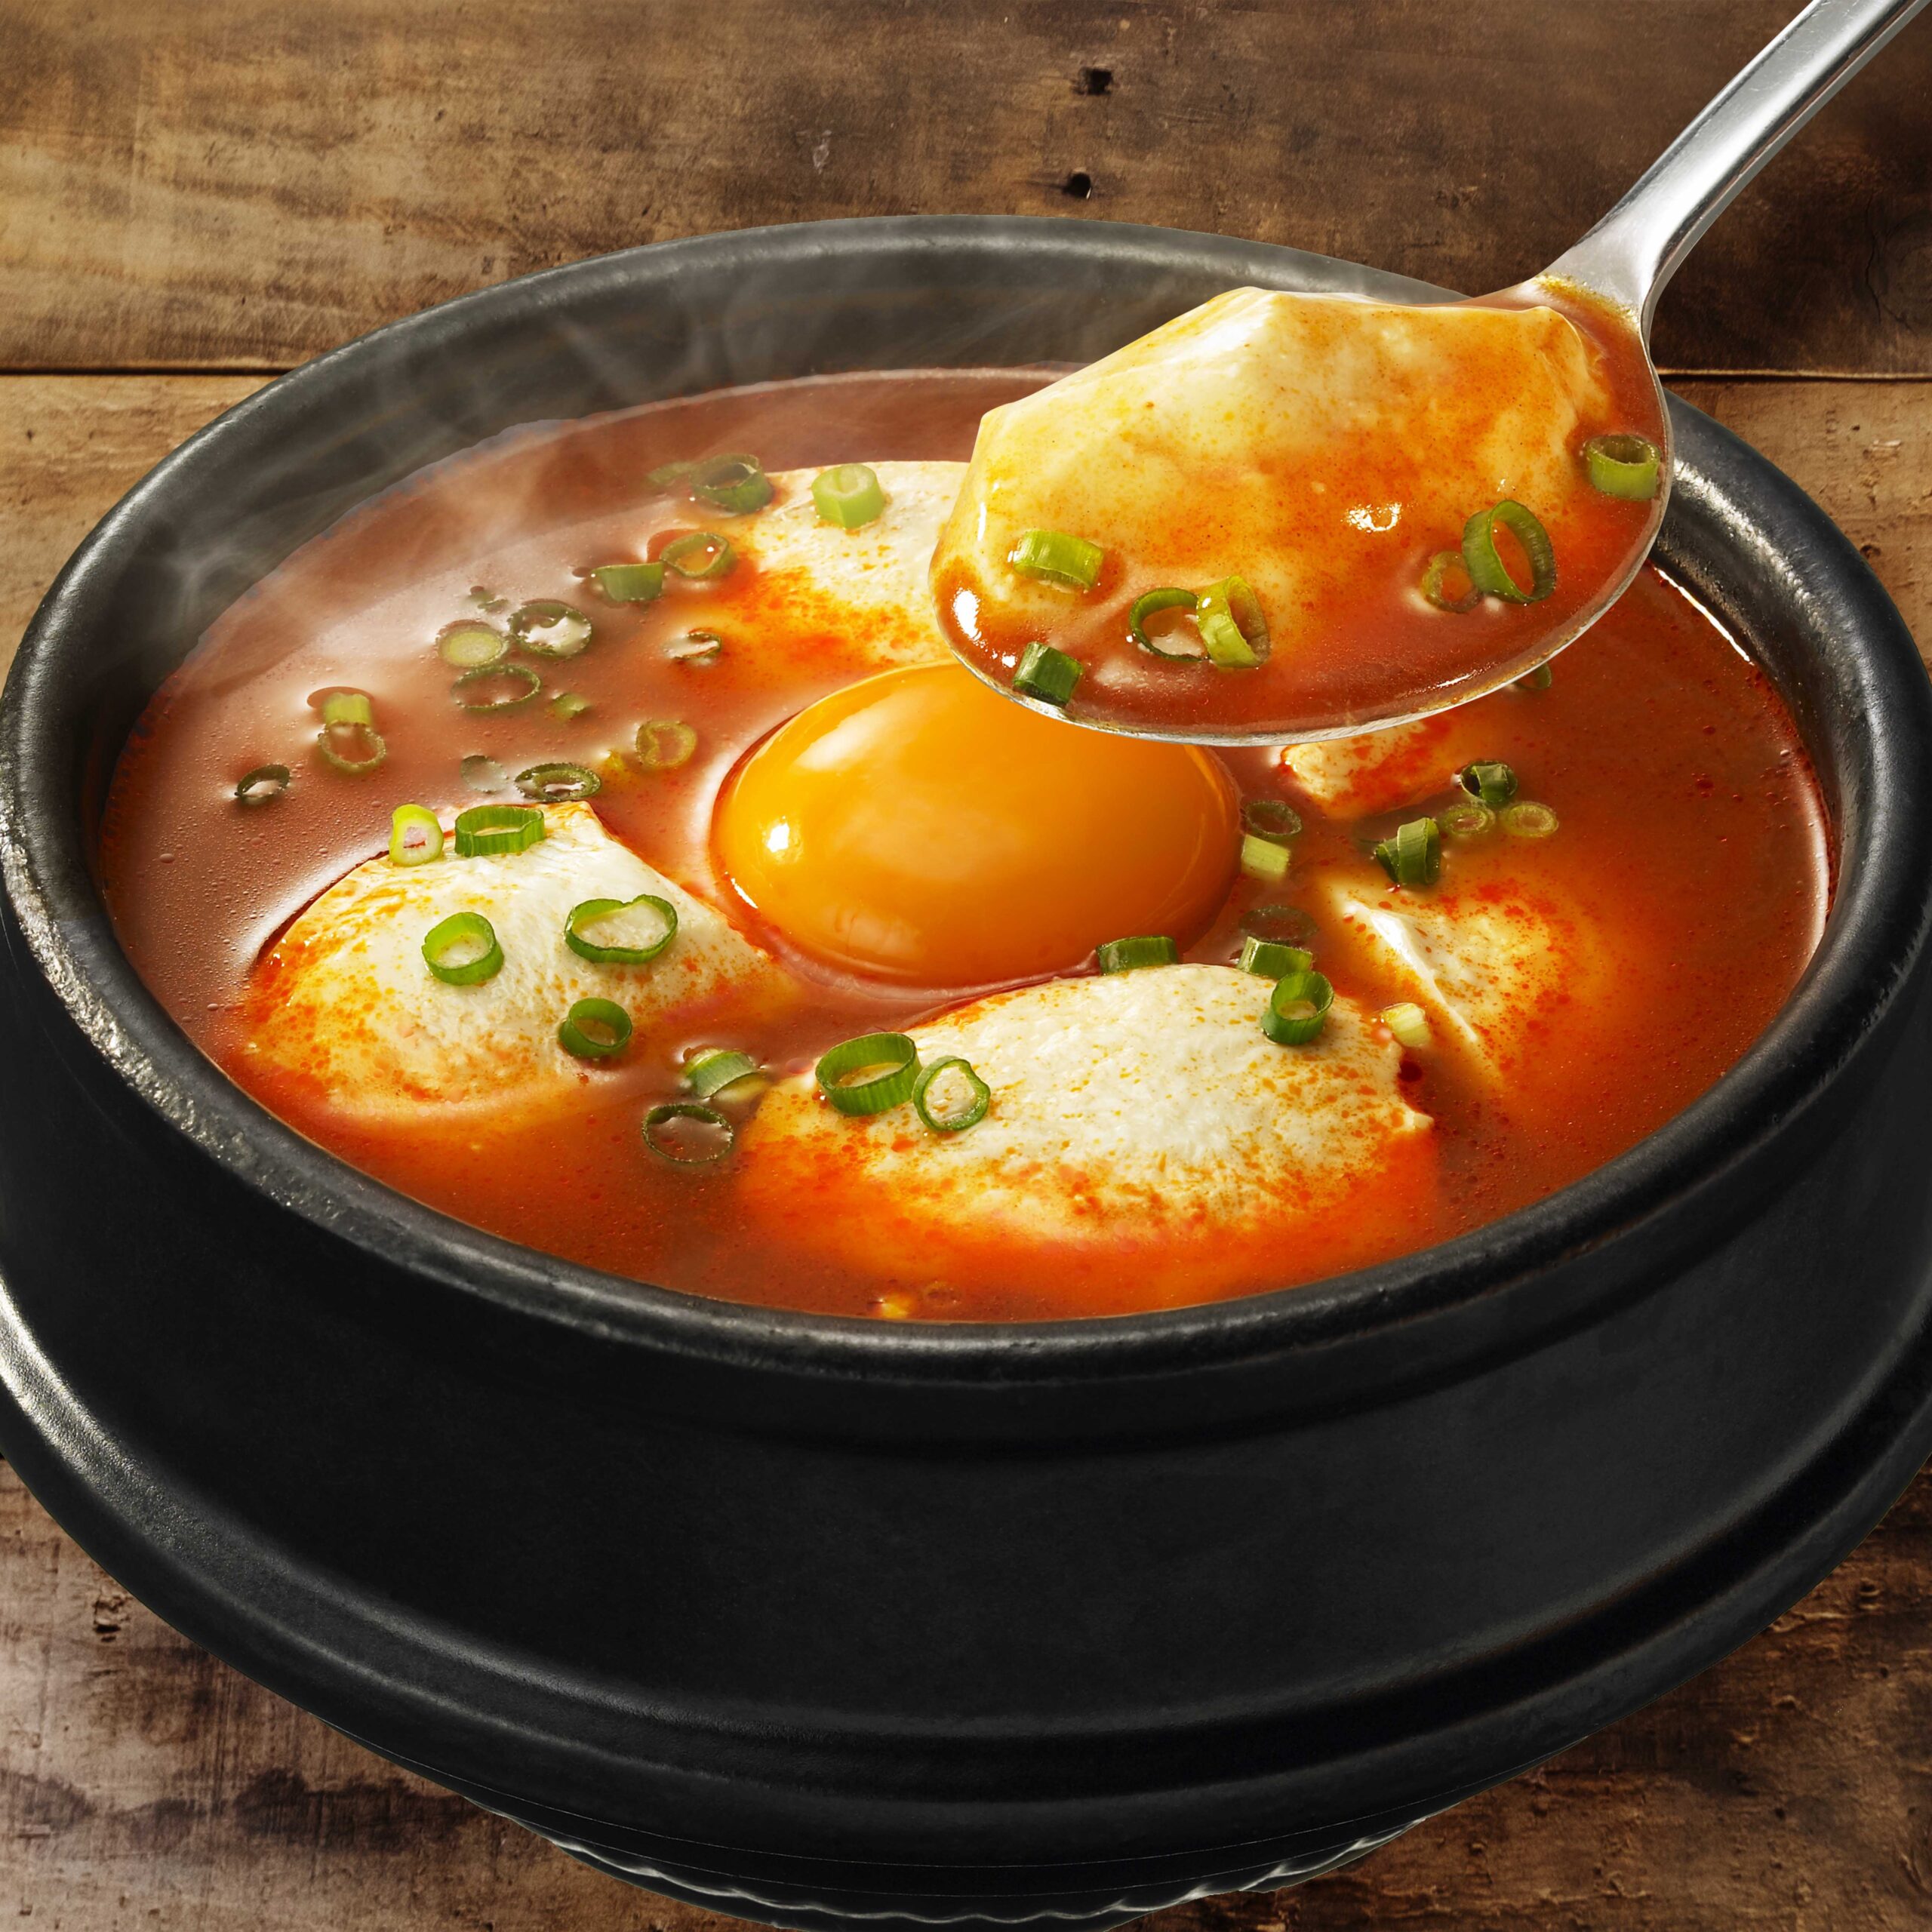 100%正規品スンドゥブチゲ用スープ 中辛 2人前 300g×10袋 ストレートタイプ 料理の素